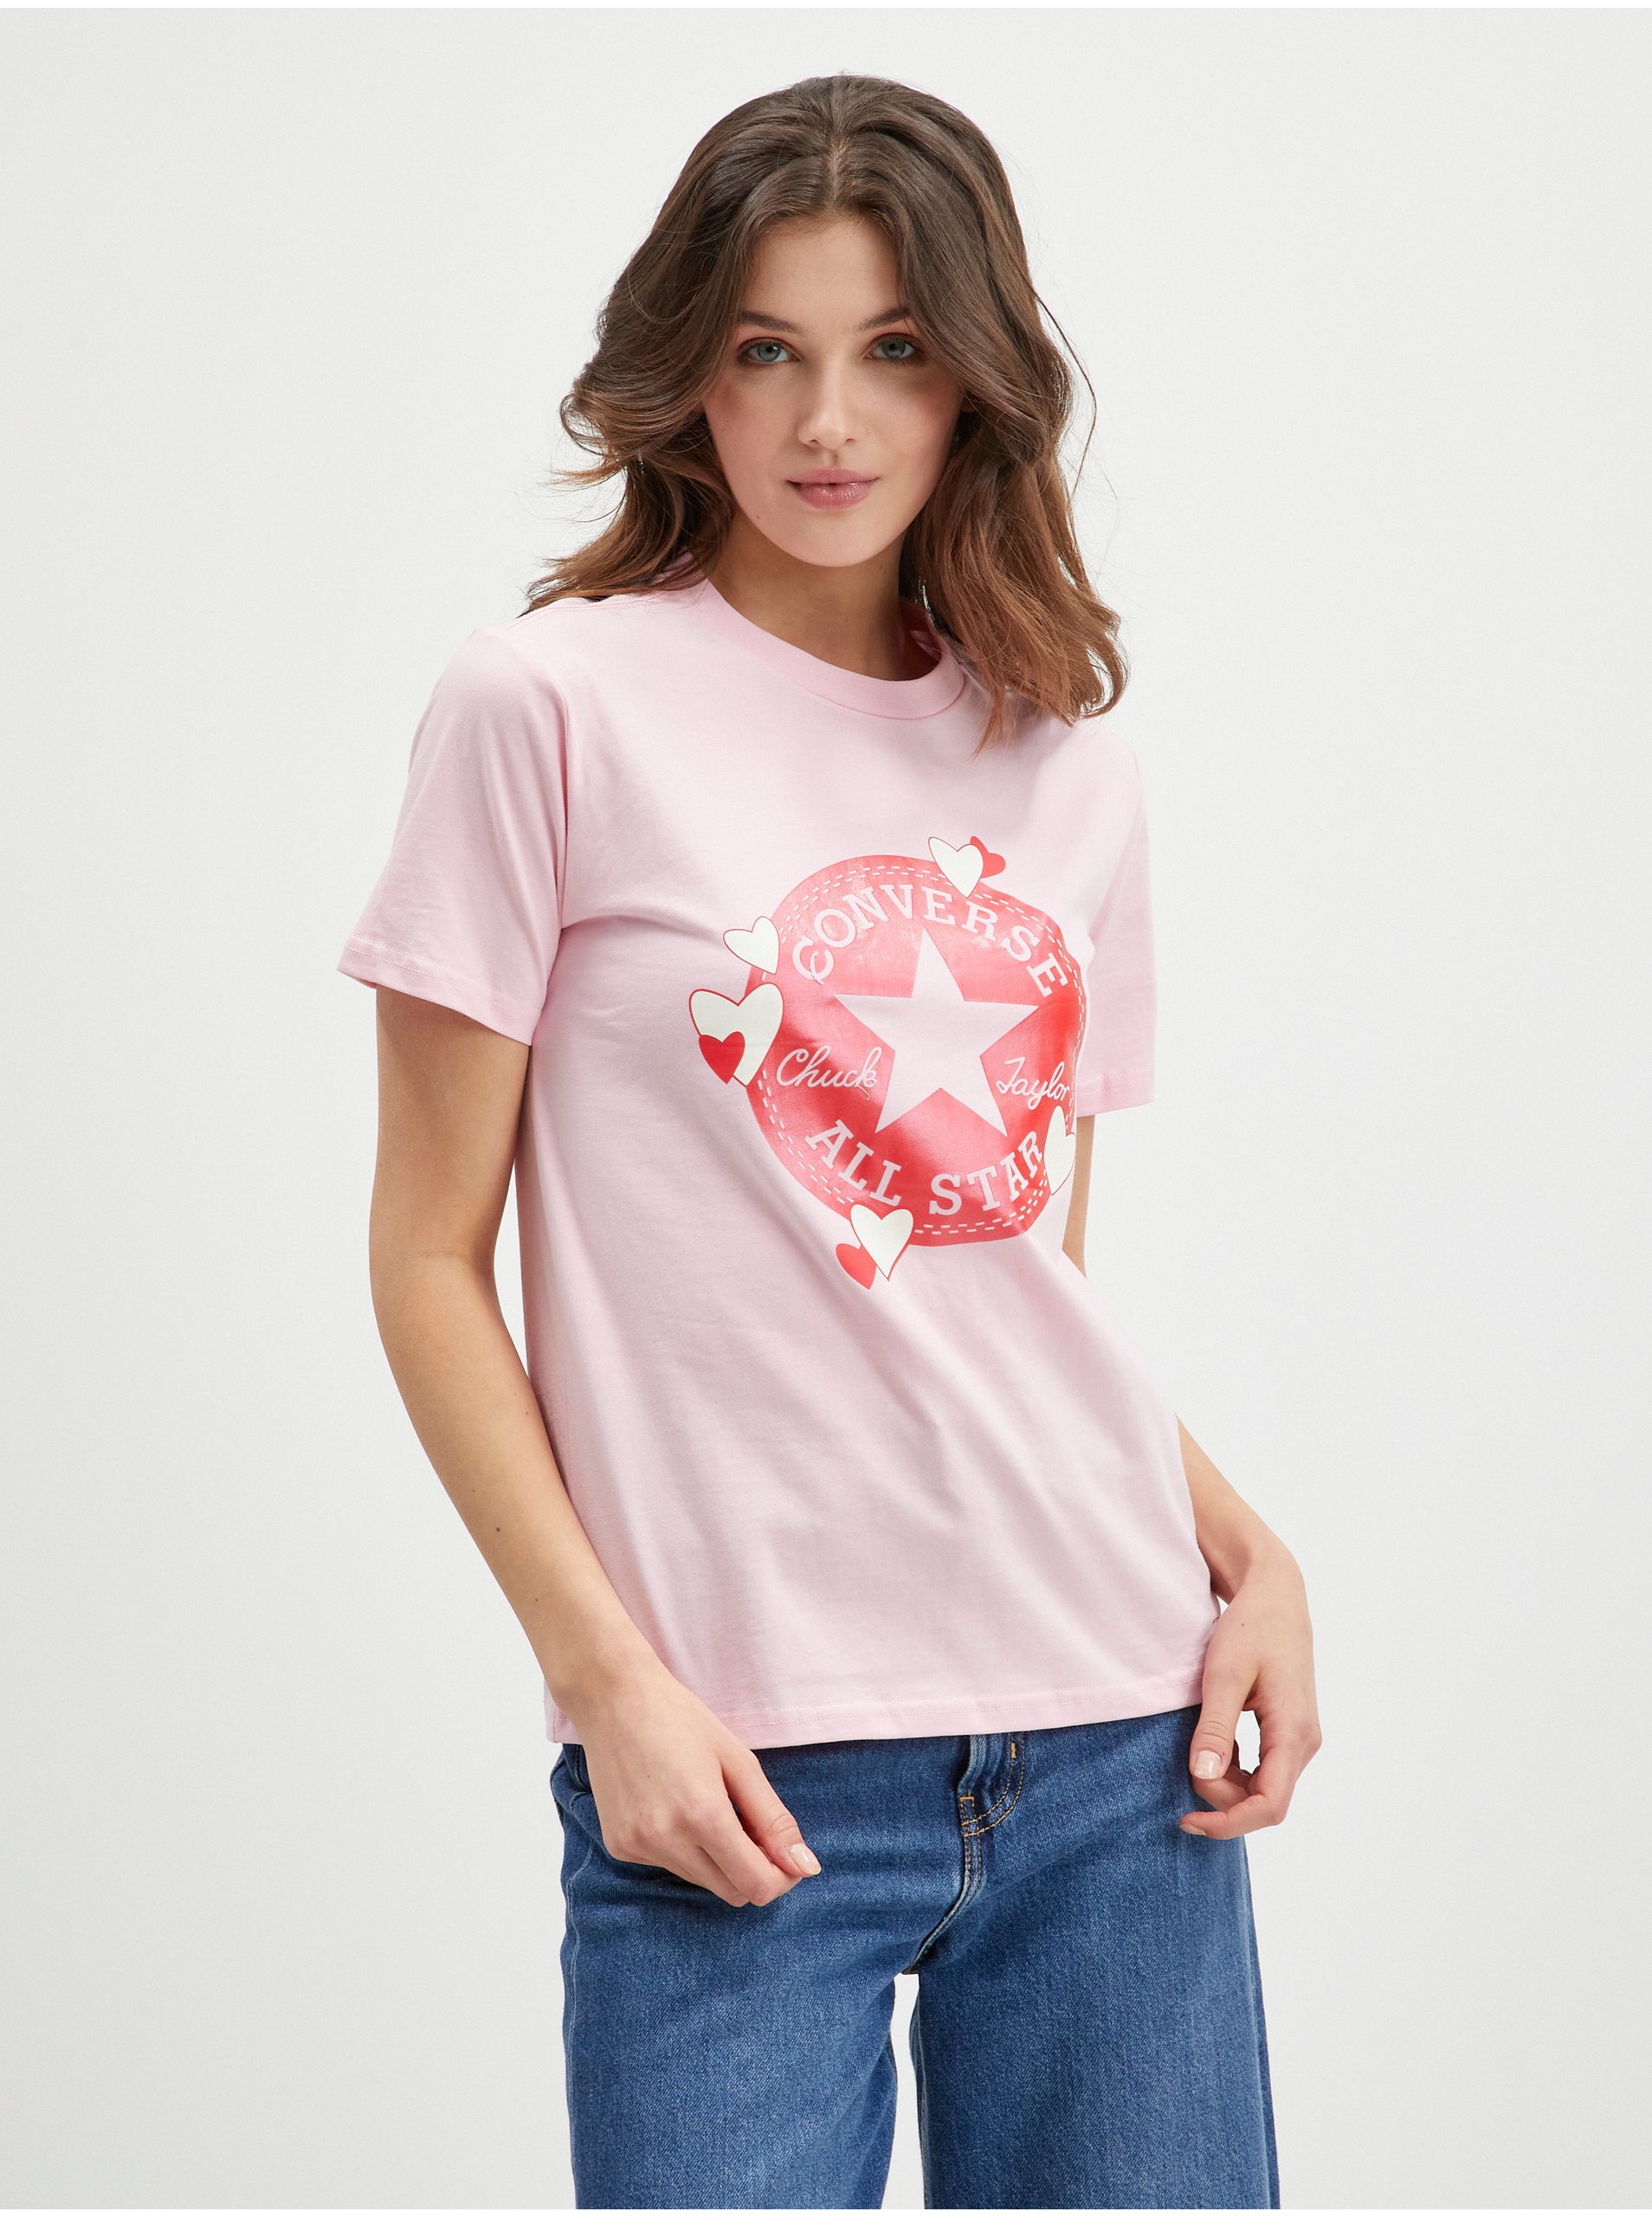 Pink Women's T-Shirt Converse - Women